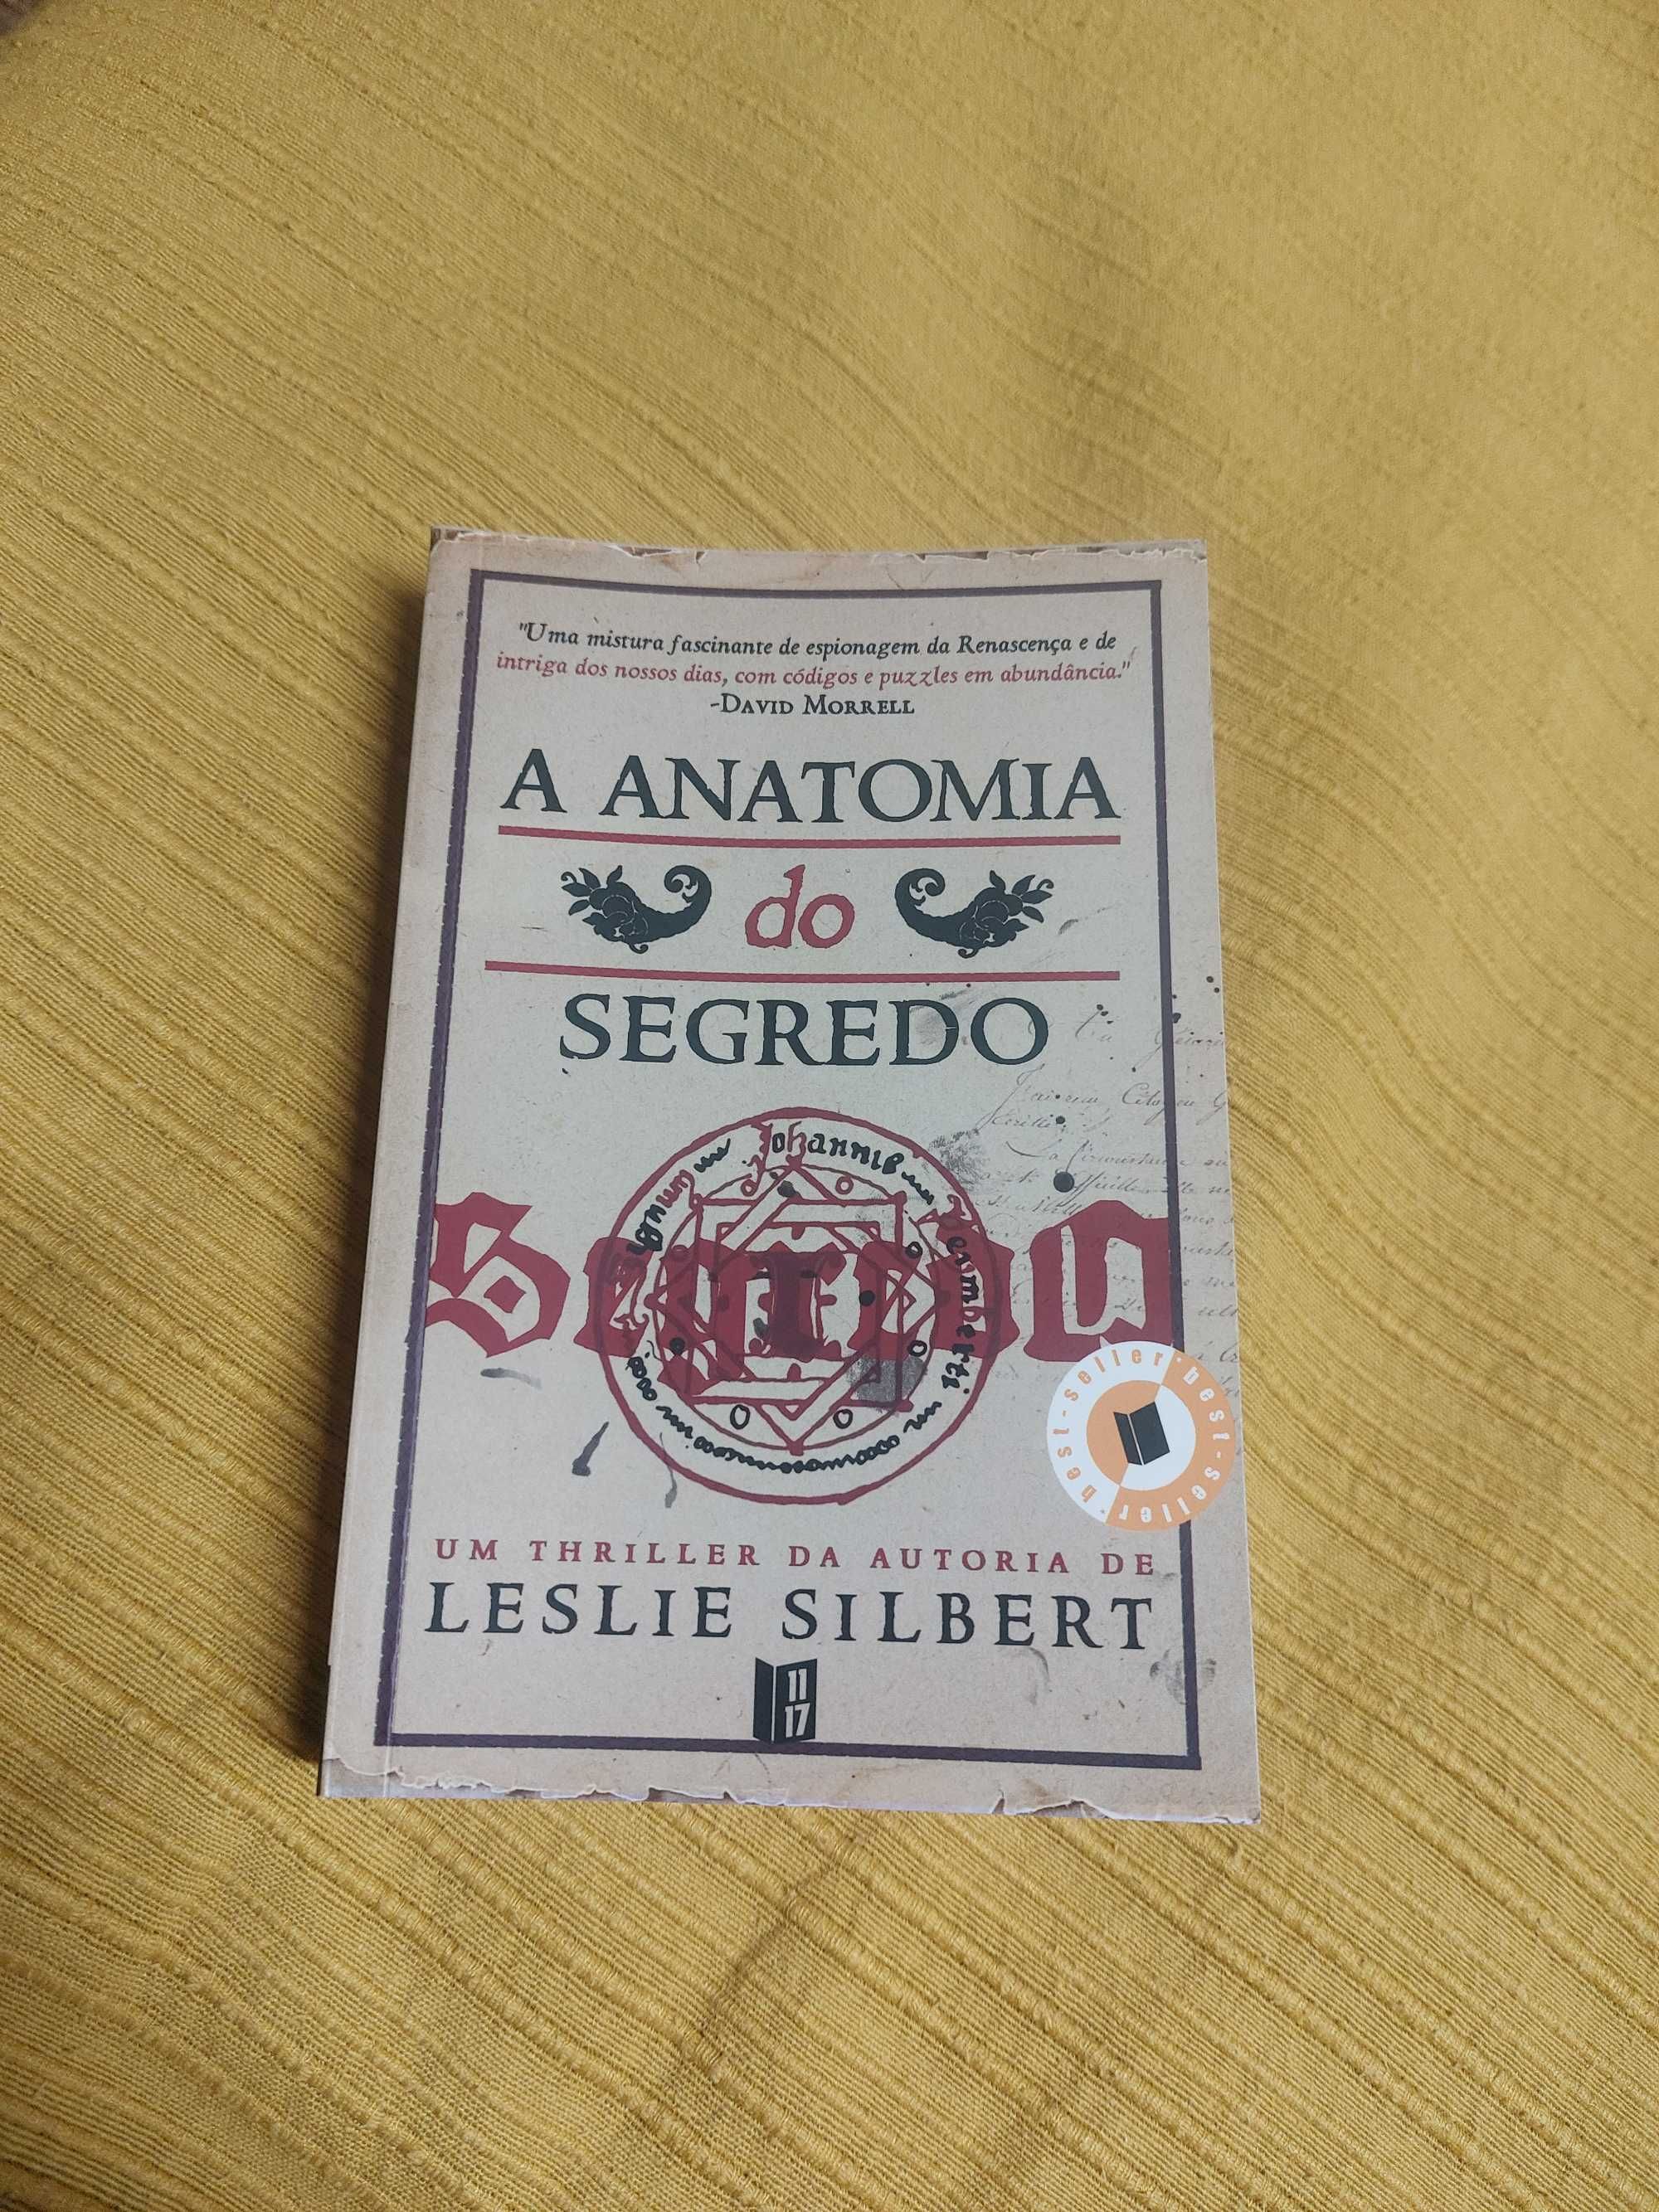 Livro " A anatomia do Segredo" de Leslie Silbert